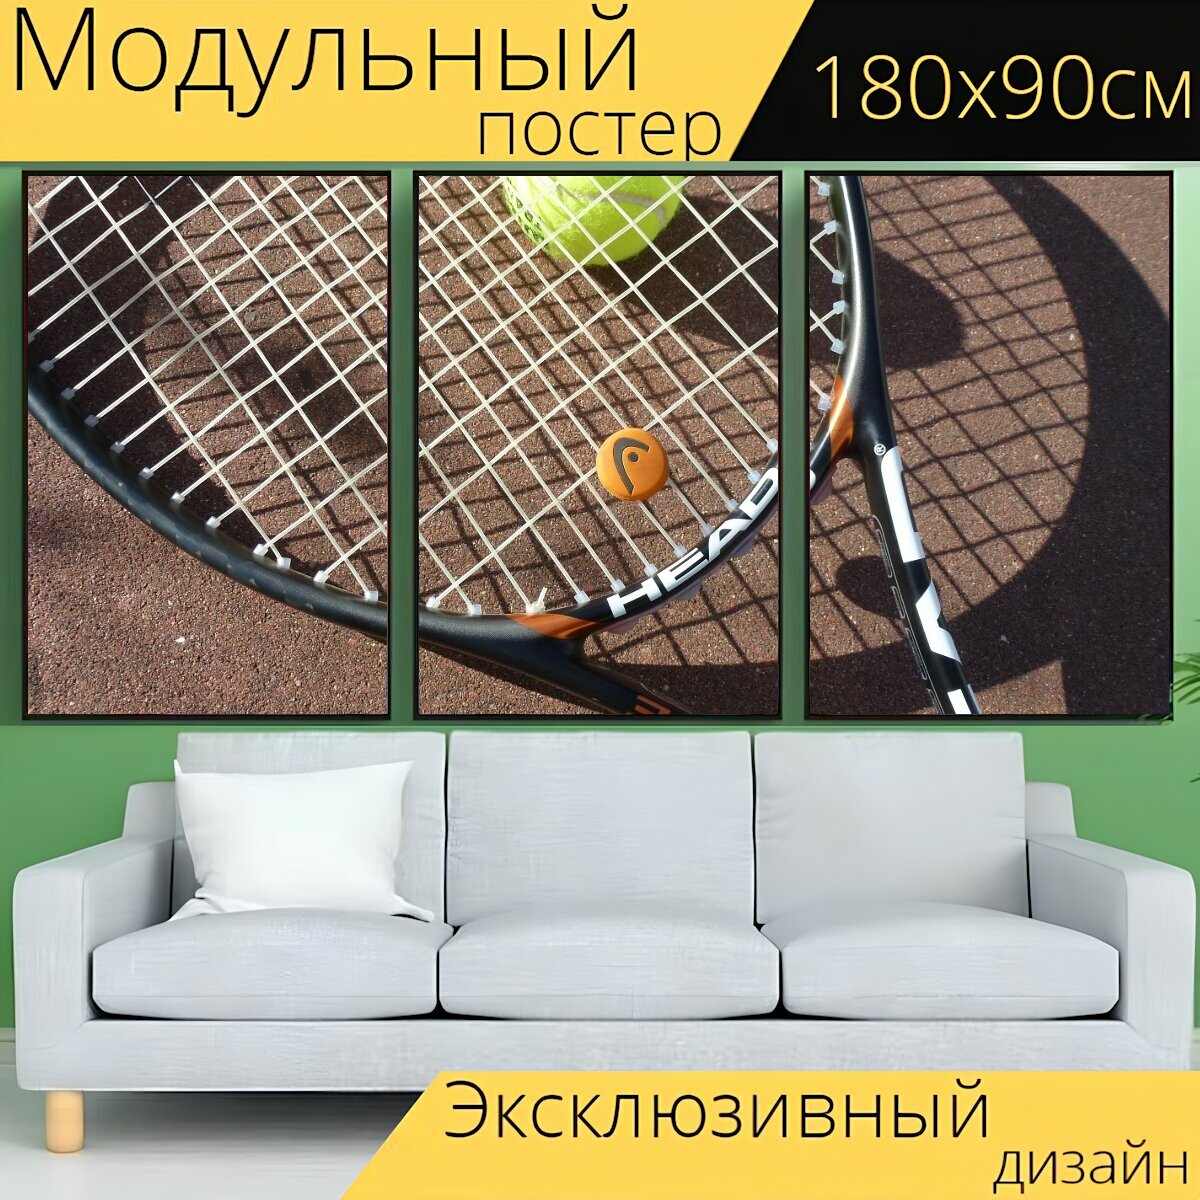 Модульный постер "Теннис, теннисный мяч, теннисная ракетка" 180 x 90 см. для интерьера